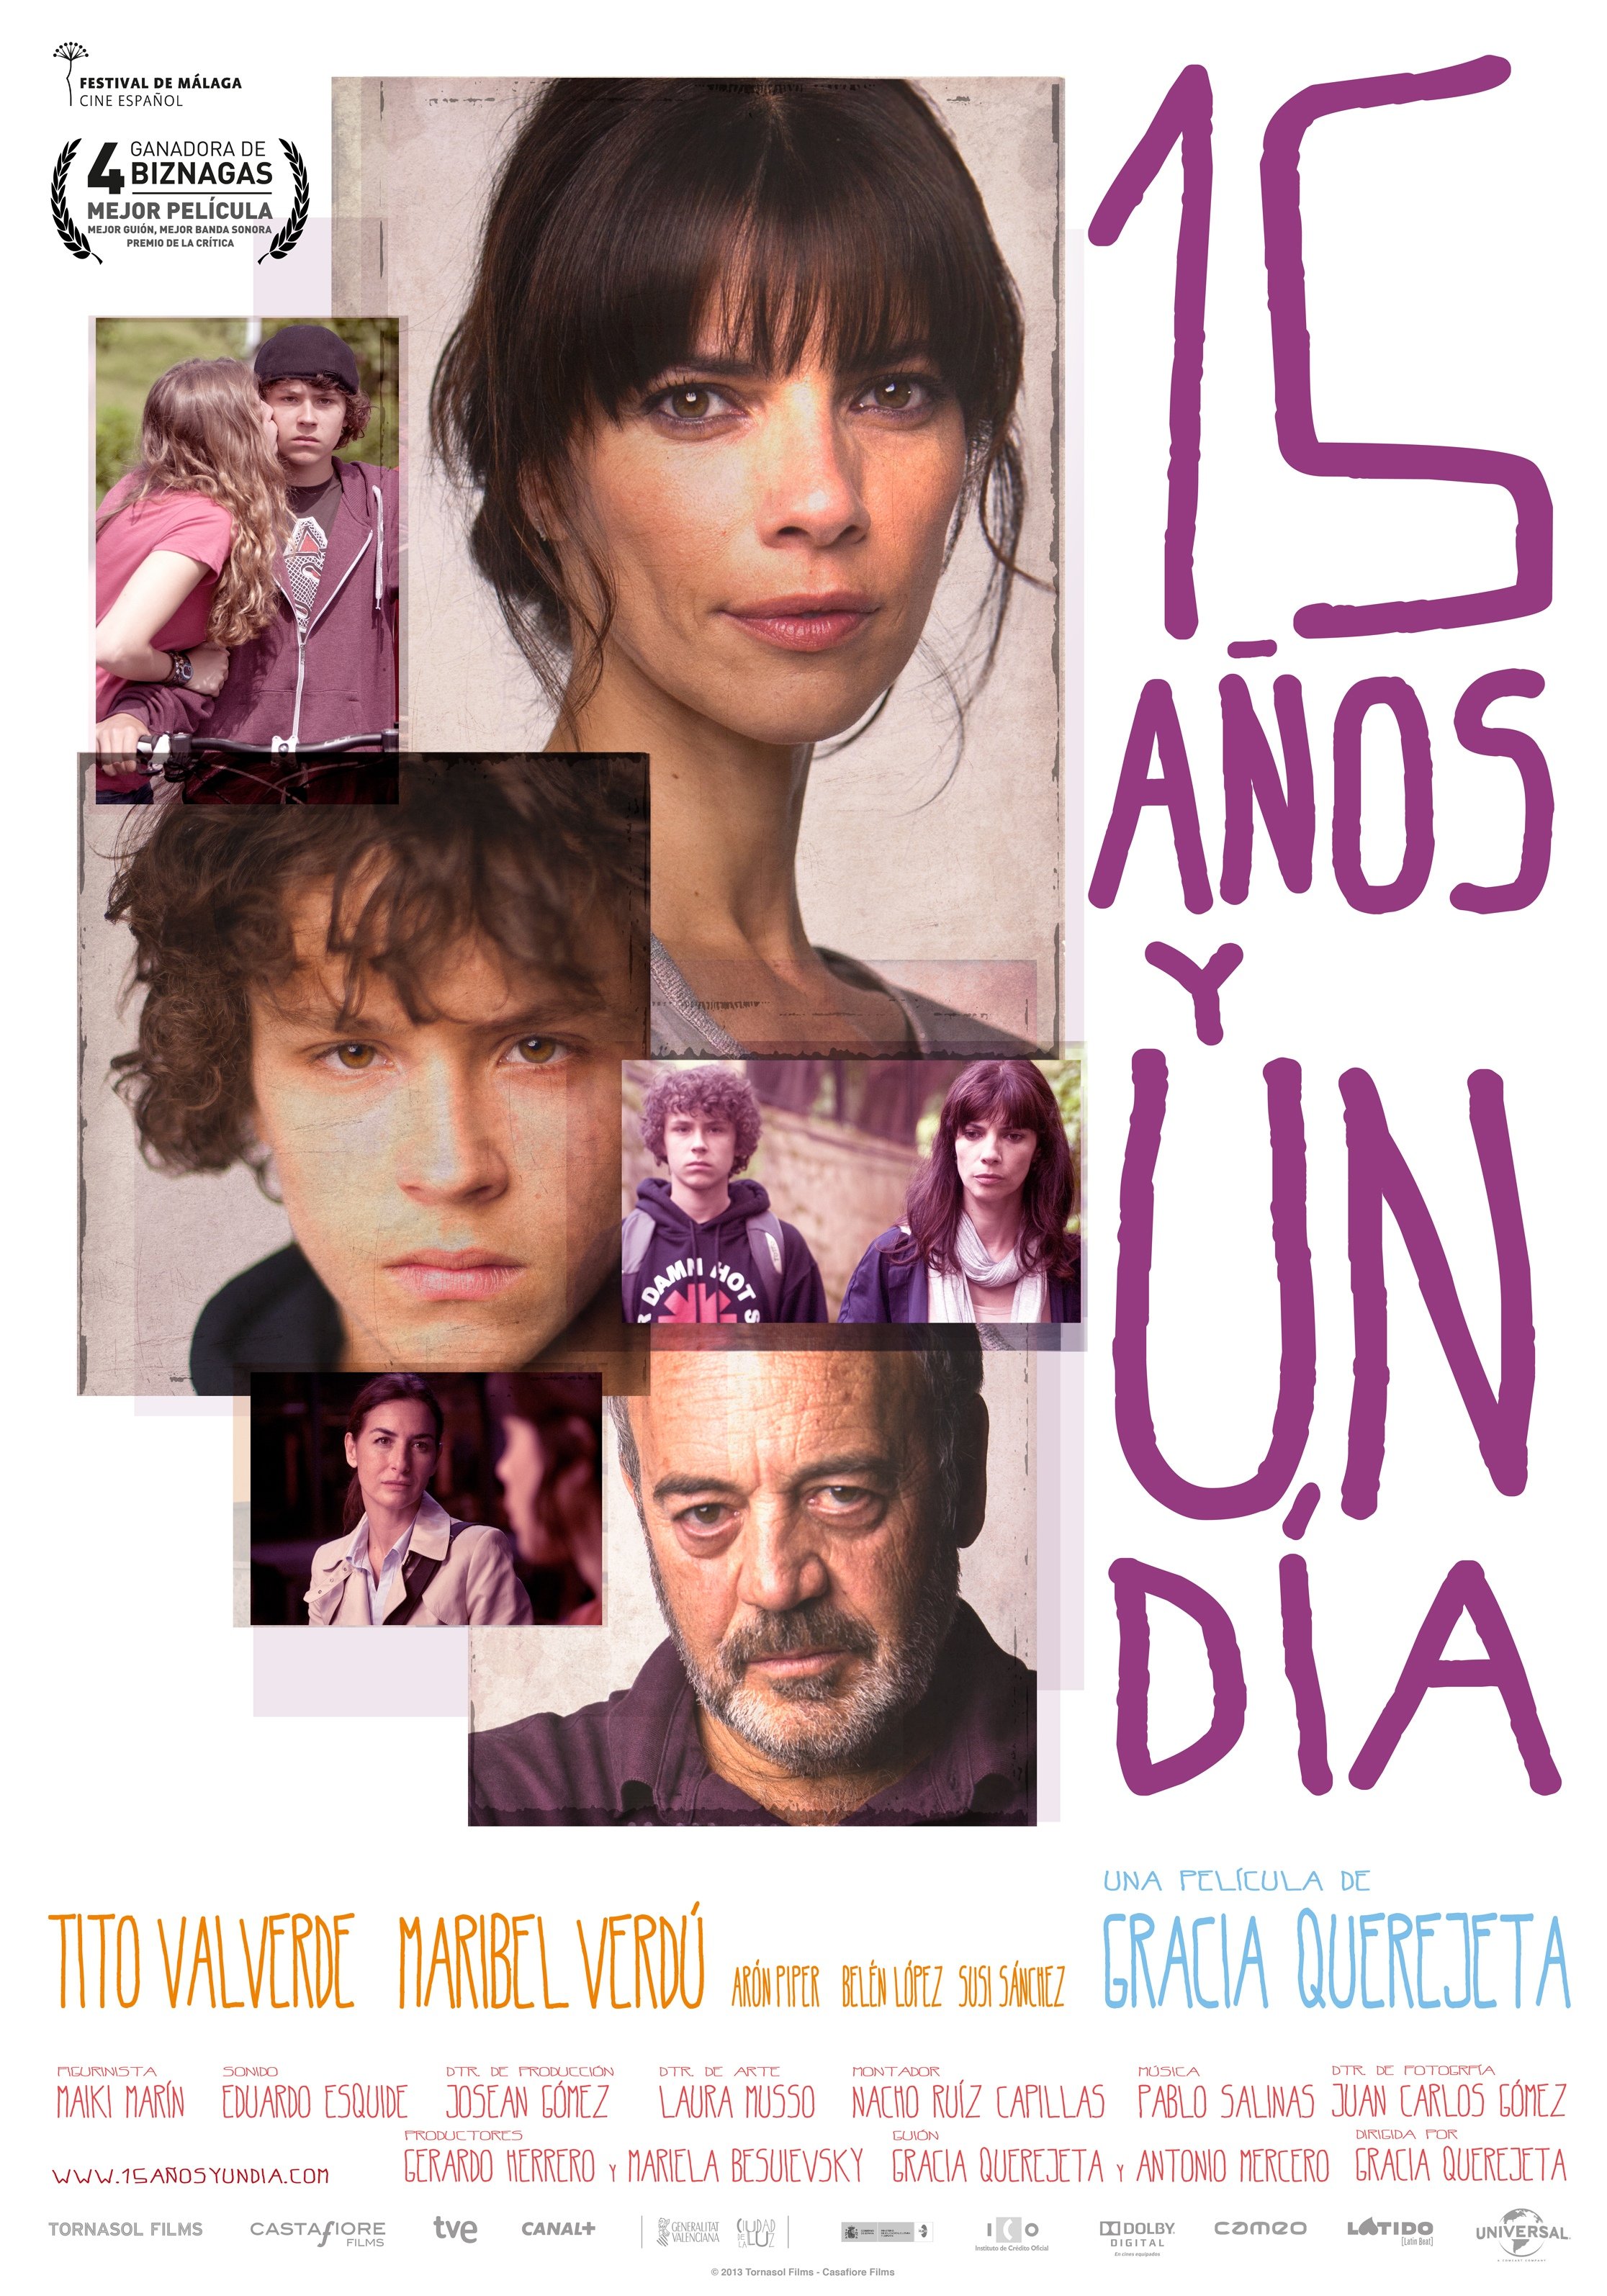 L'affiche originale du film 15 años y un día en espagnol